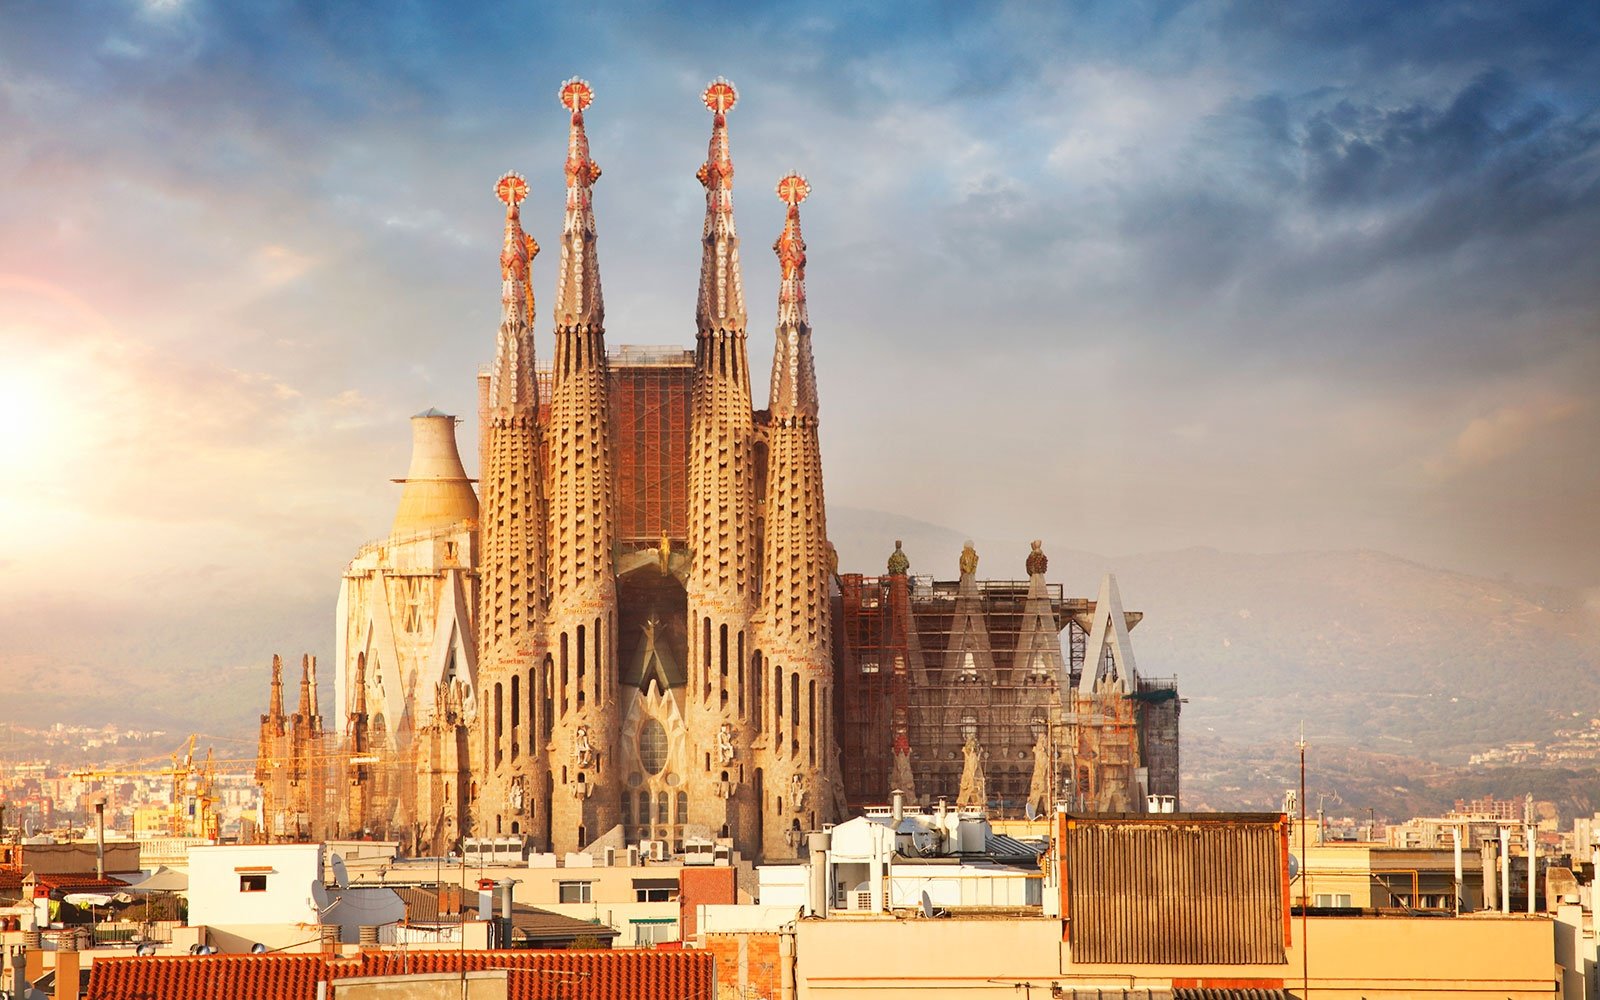 La Sagrada Familia Barcelona Widescreen Wallpapers 